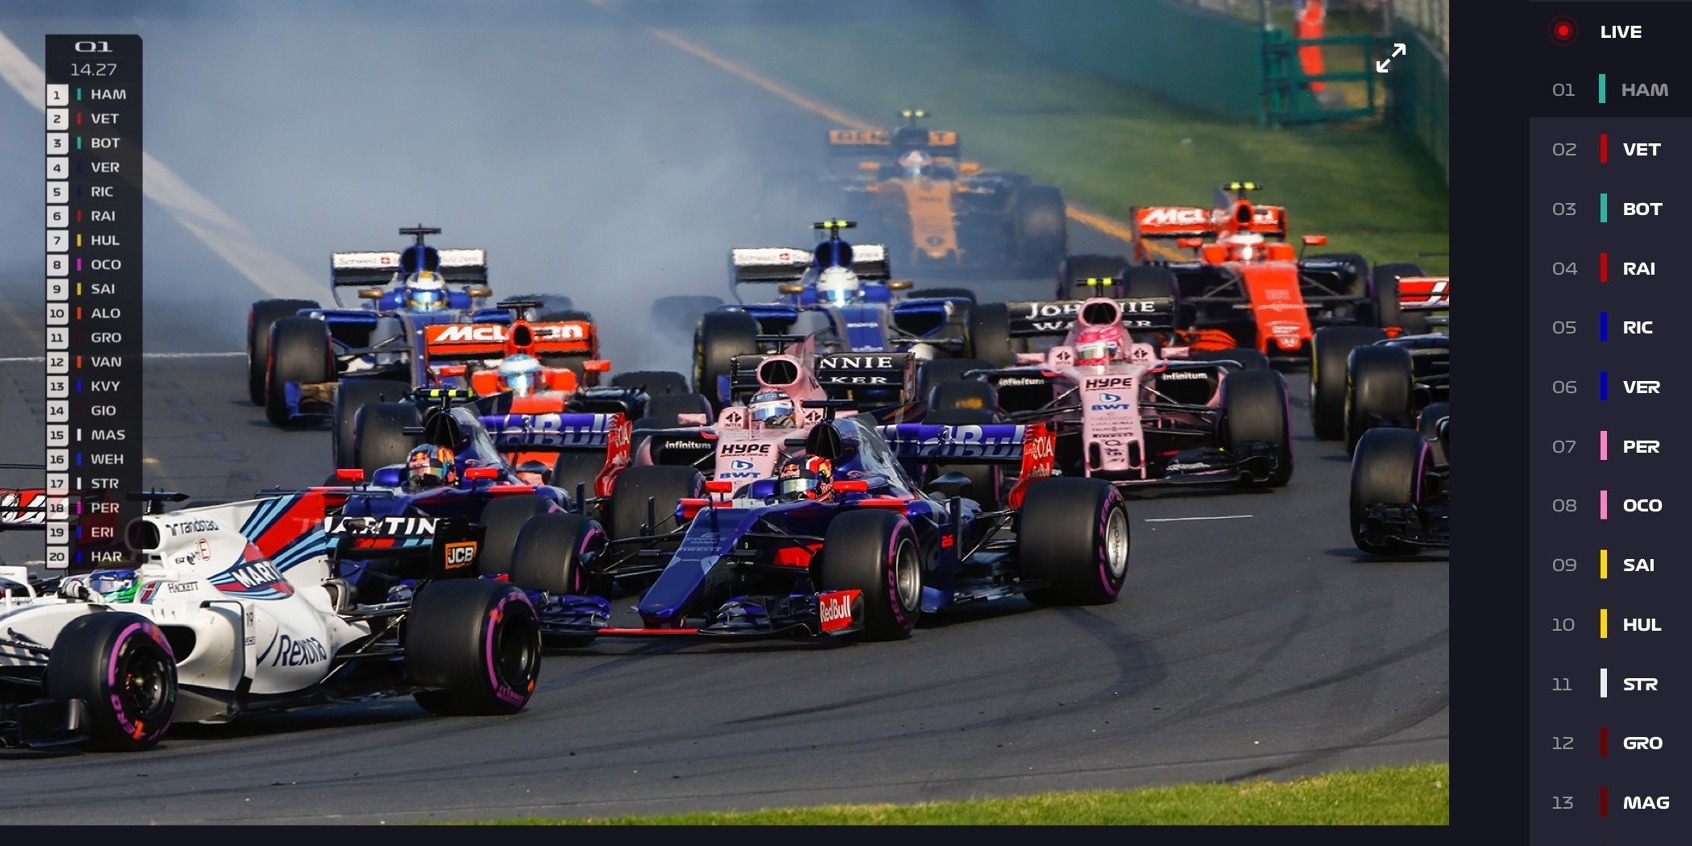 Offizieller Live-Stream der Formel 1 2018 mit RTL-Kommentar